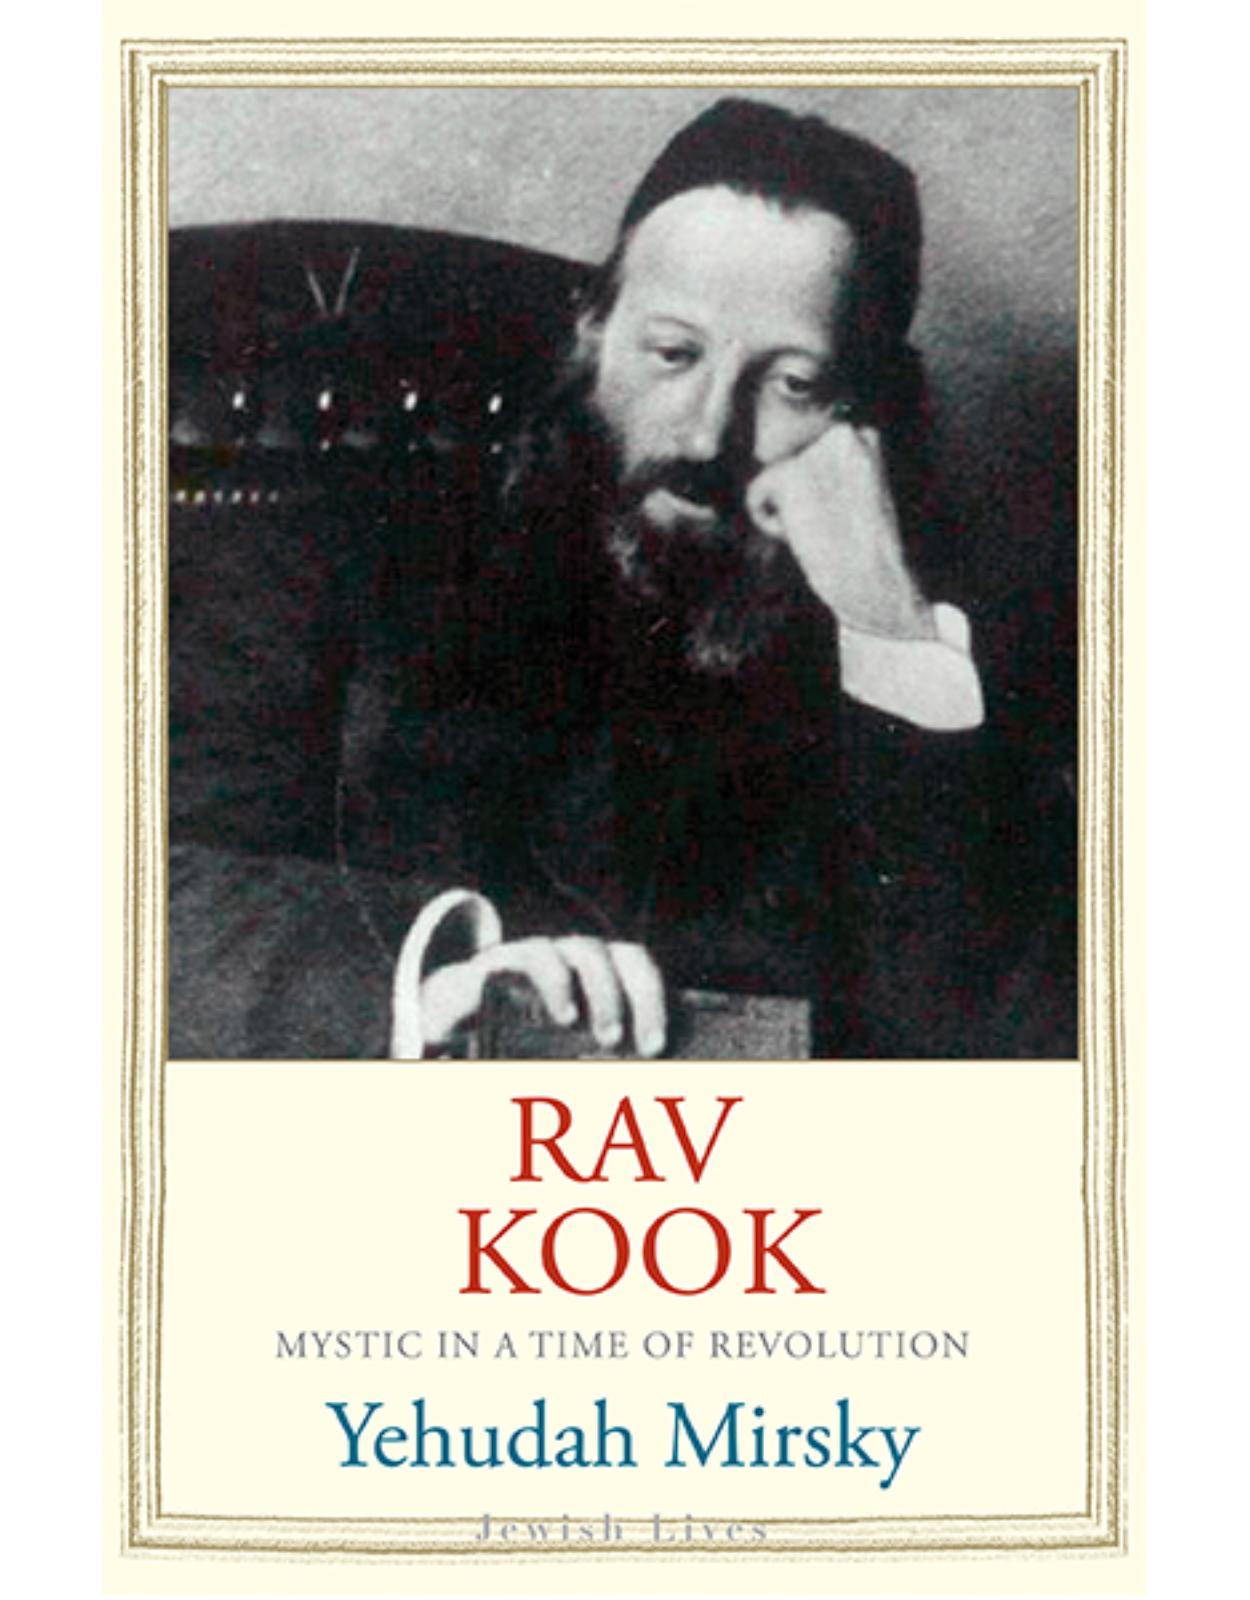 Rav Kook. Everything is Rising